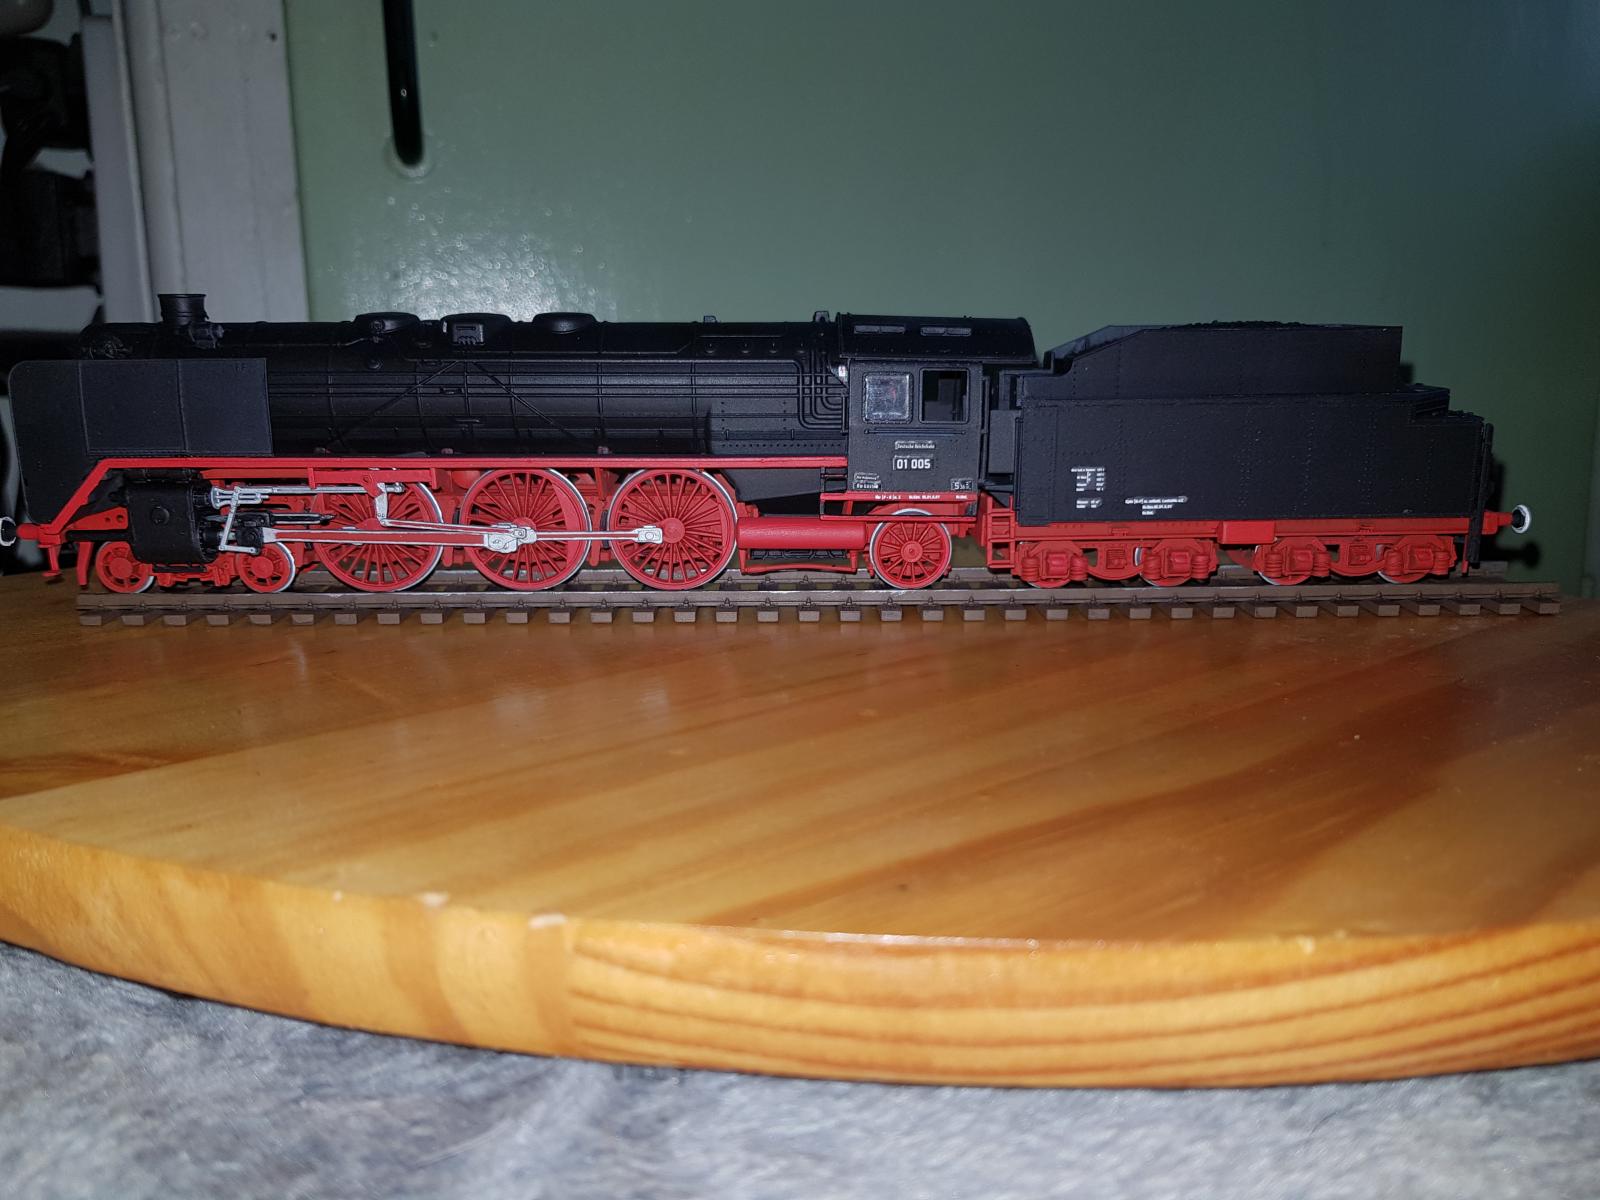 1/87 Revell BR01 Express Locomotive - Locomotives - iModeler